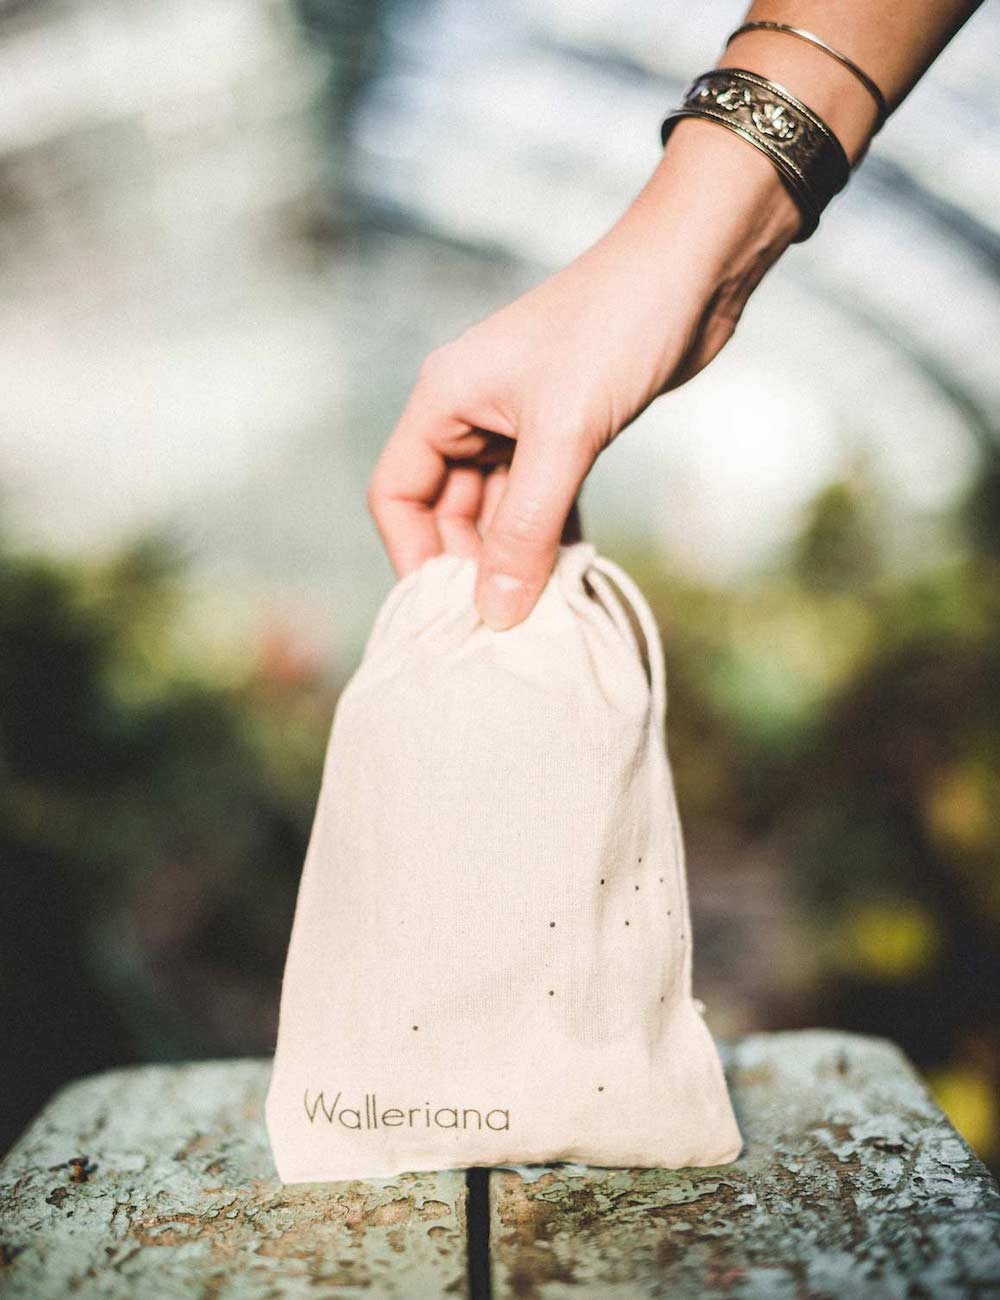 La pochette à collants Walleriana - pour les transporter partout sans les abîmer